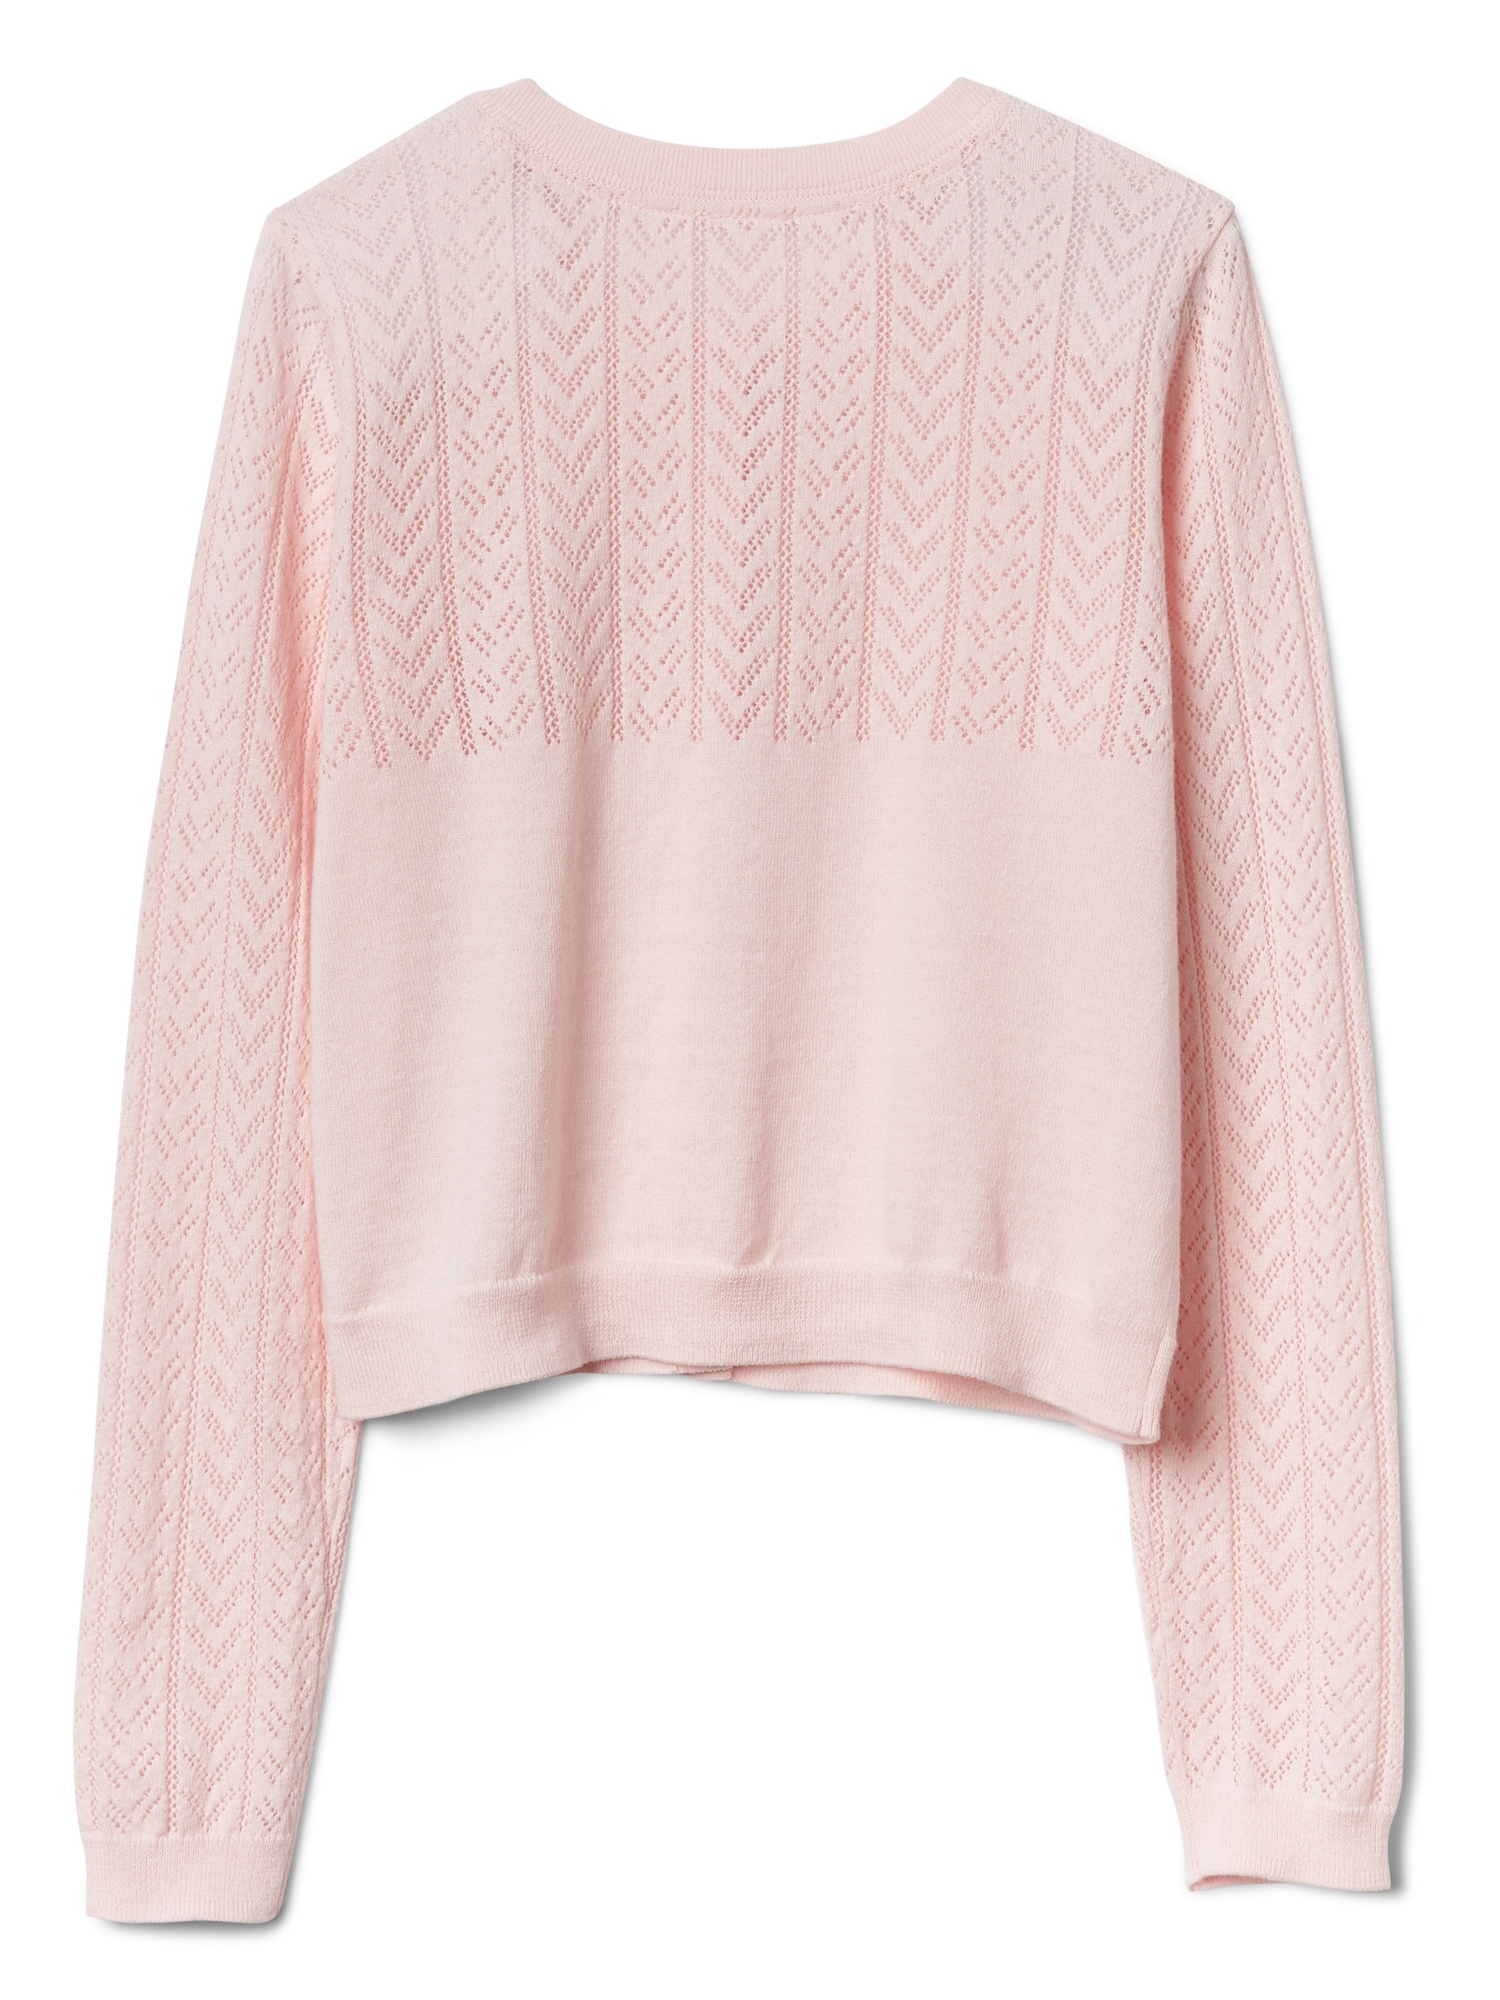 Eyelet Crop Cardigan Sweater | Gap